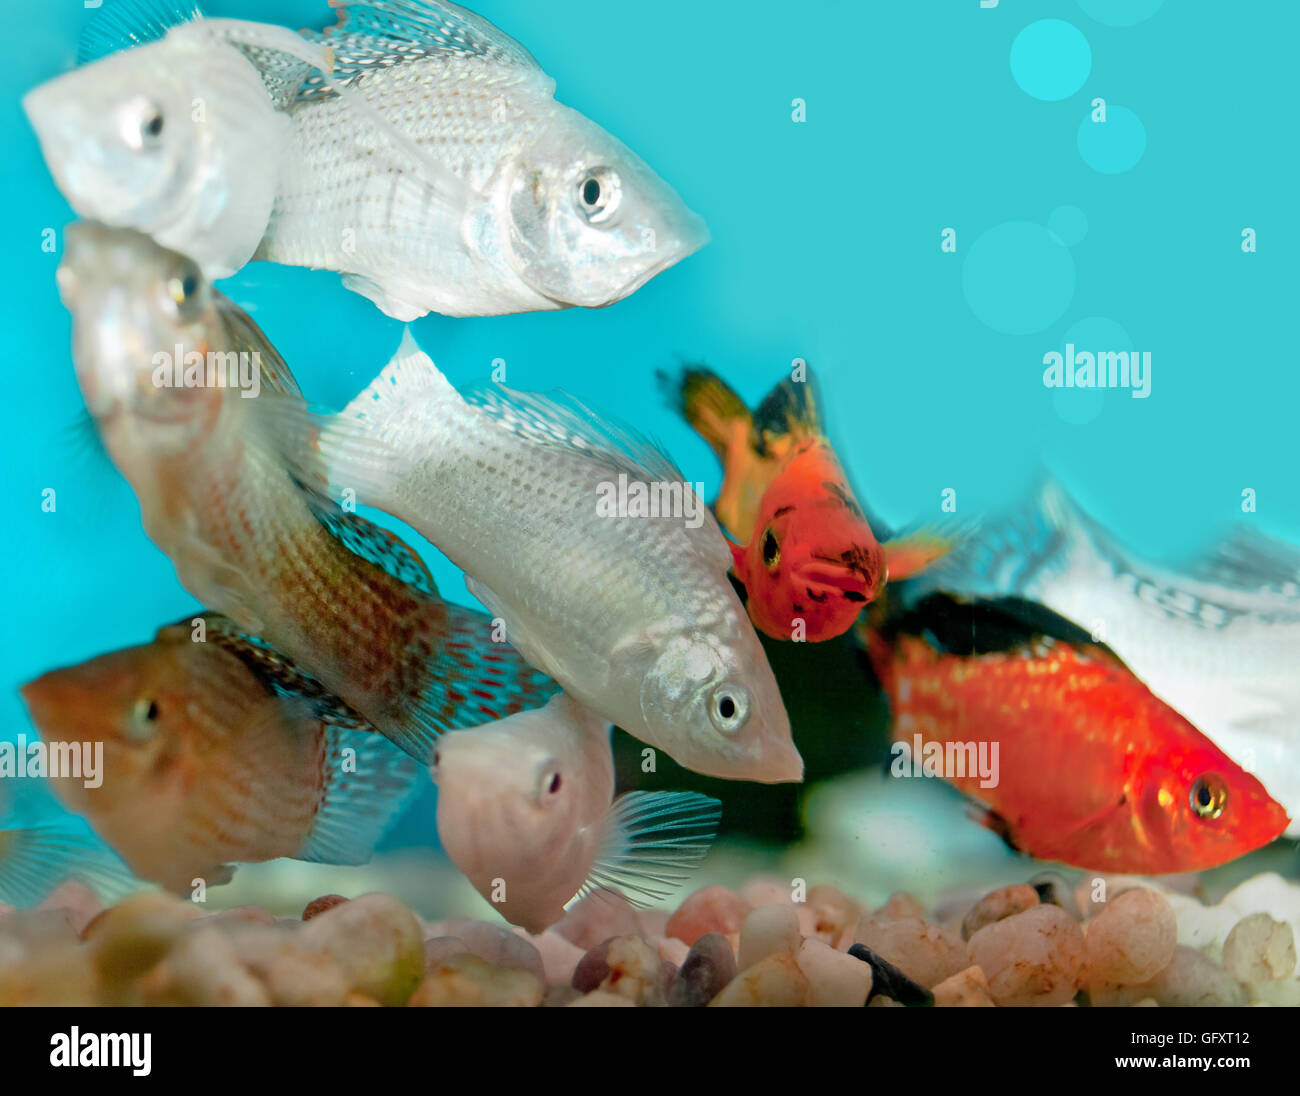 closeup of aquarium Stock Photo